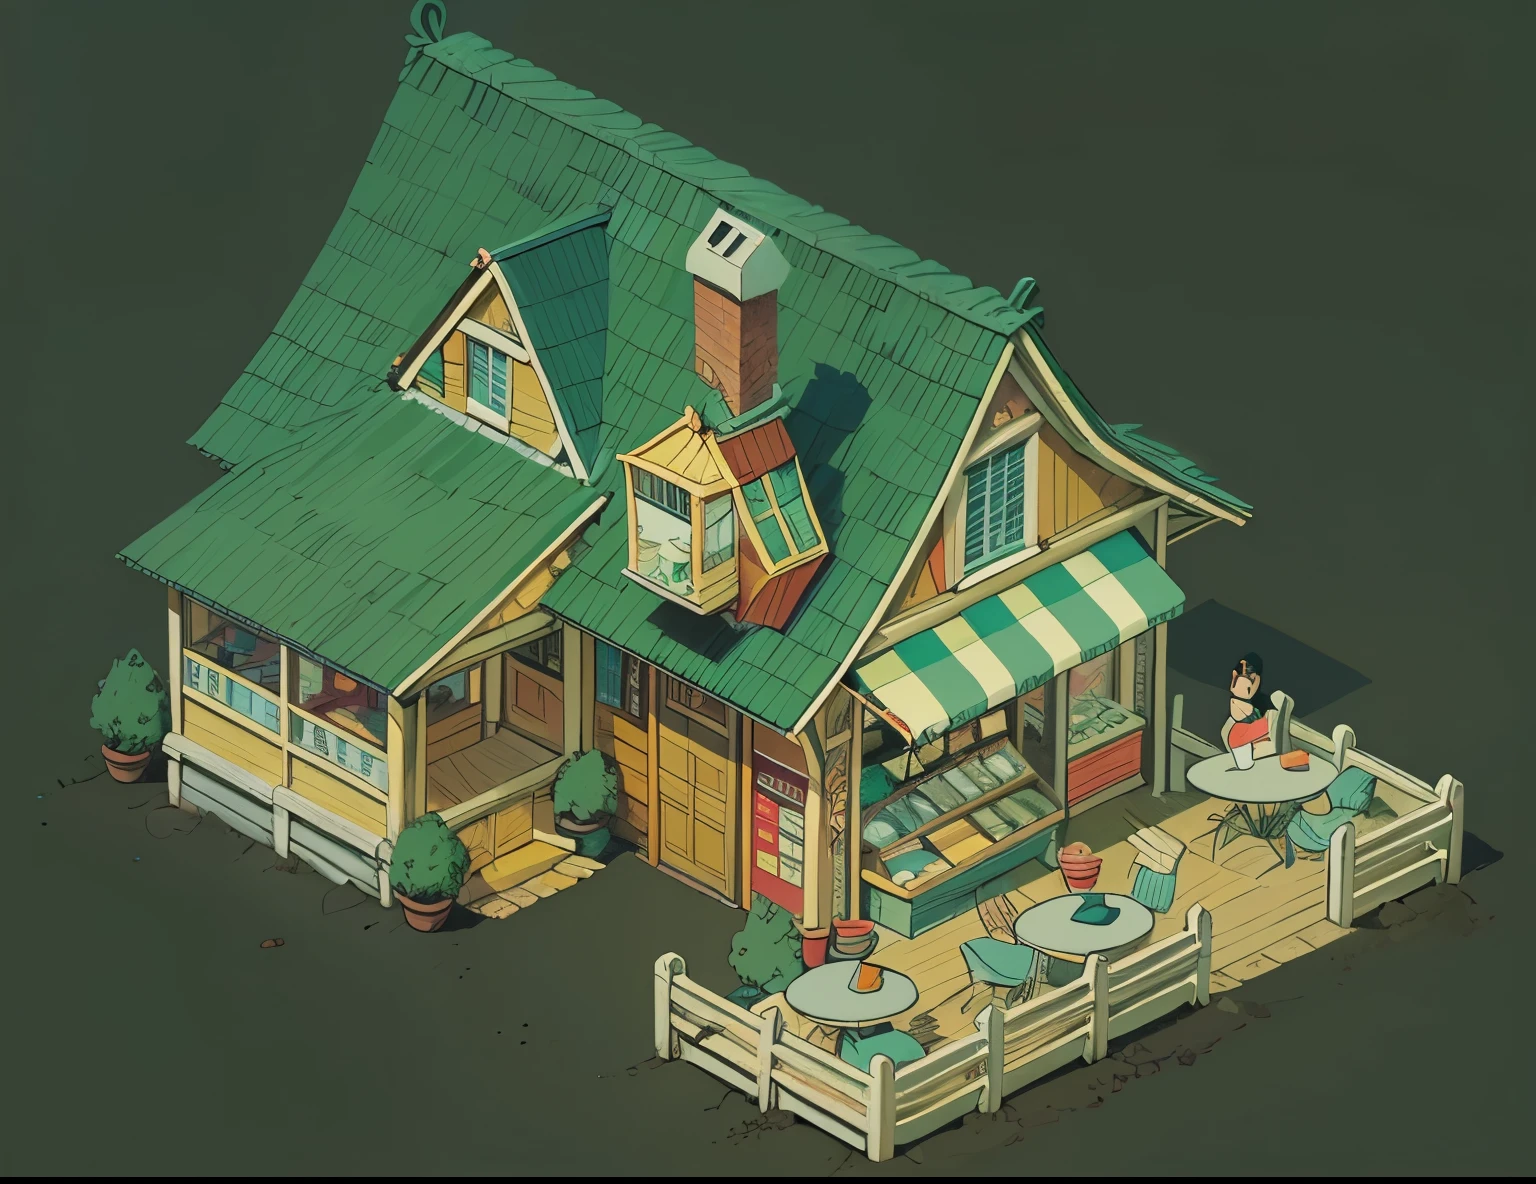 손으로 그린 커피숍의 아이소메트릭 그림, 구내 식당, 파란 지붕이 있는, 붉은 벽돌 추이메나,비행기 아이소메트릭 